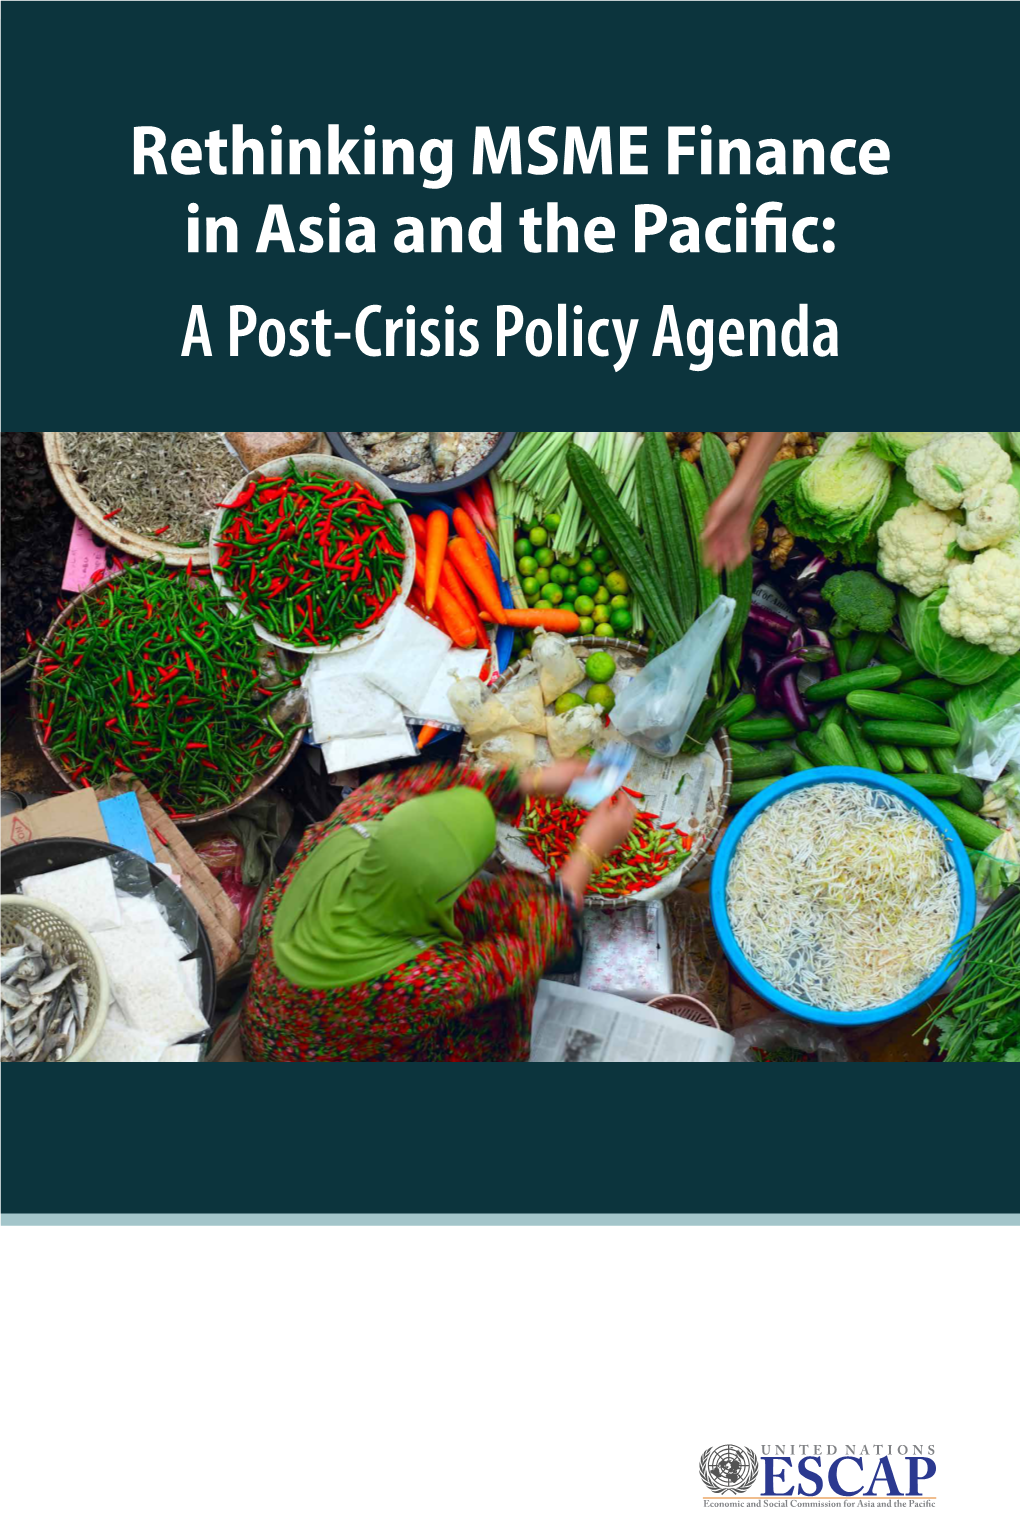 A Post-Crisis Policy Agenda